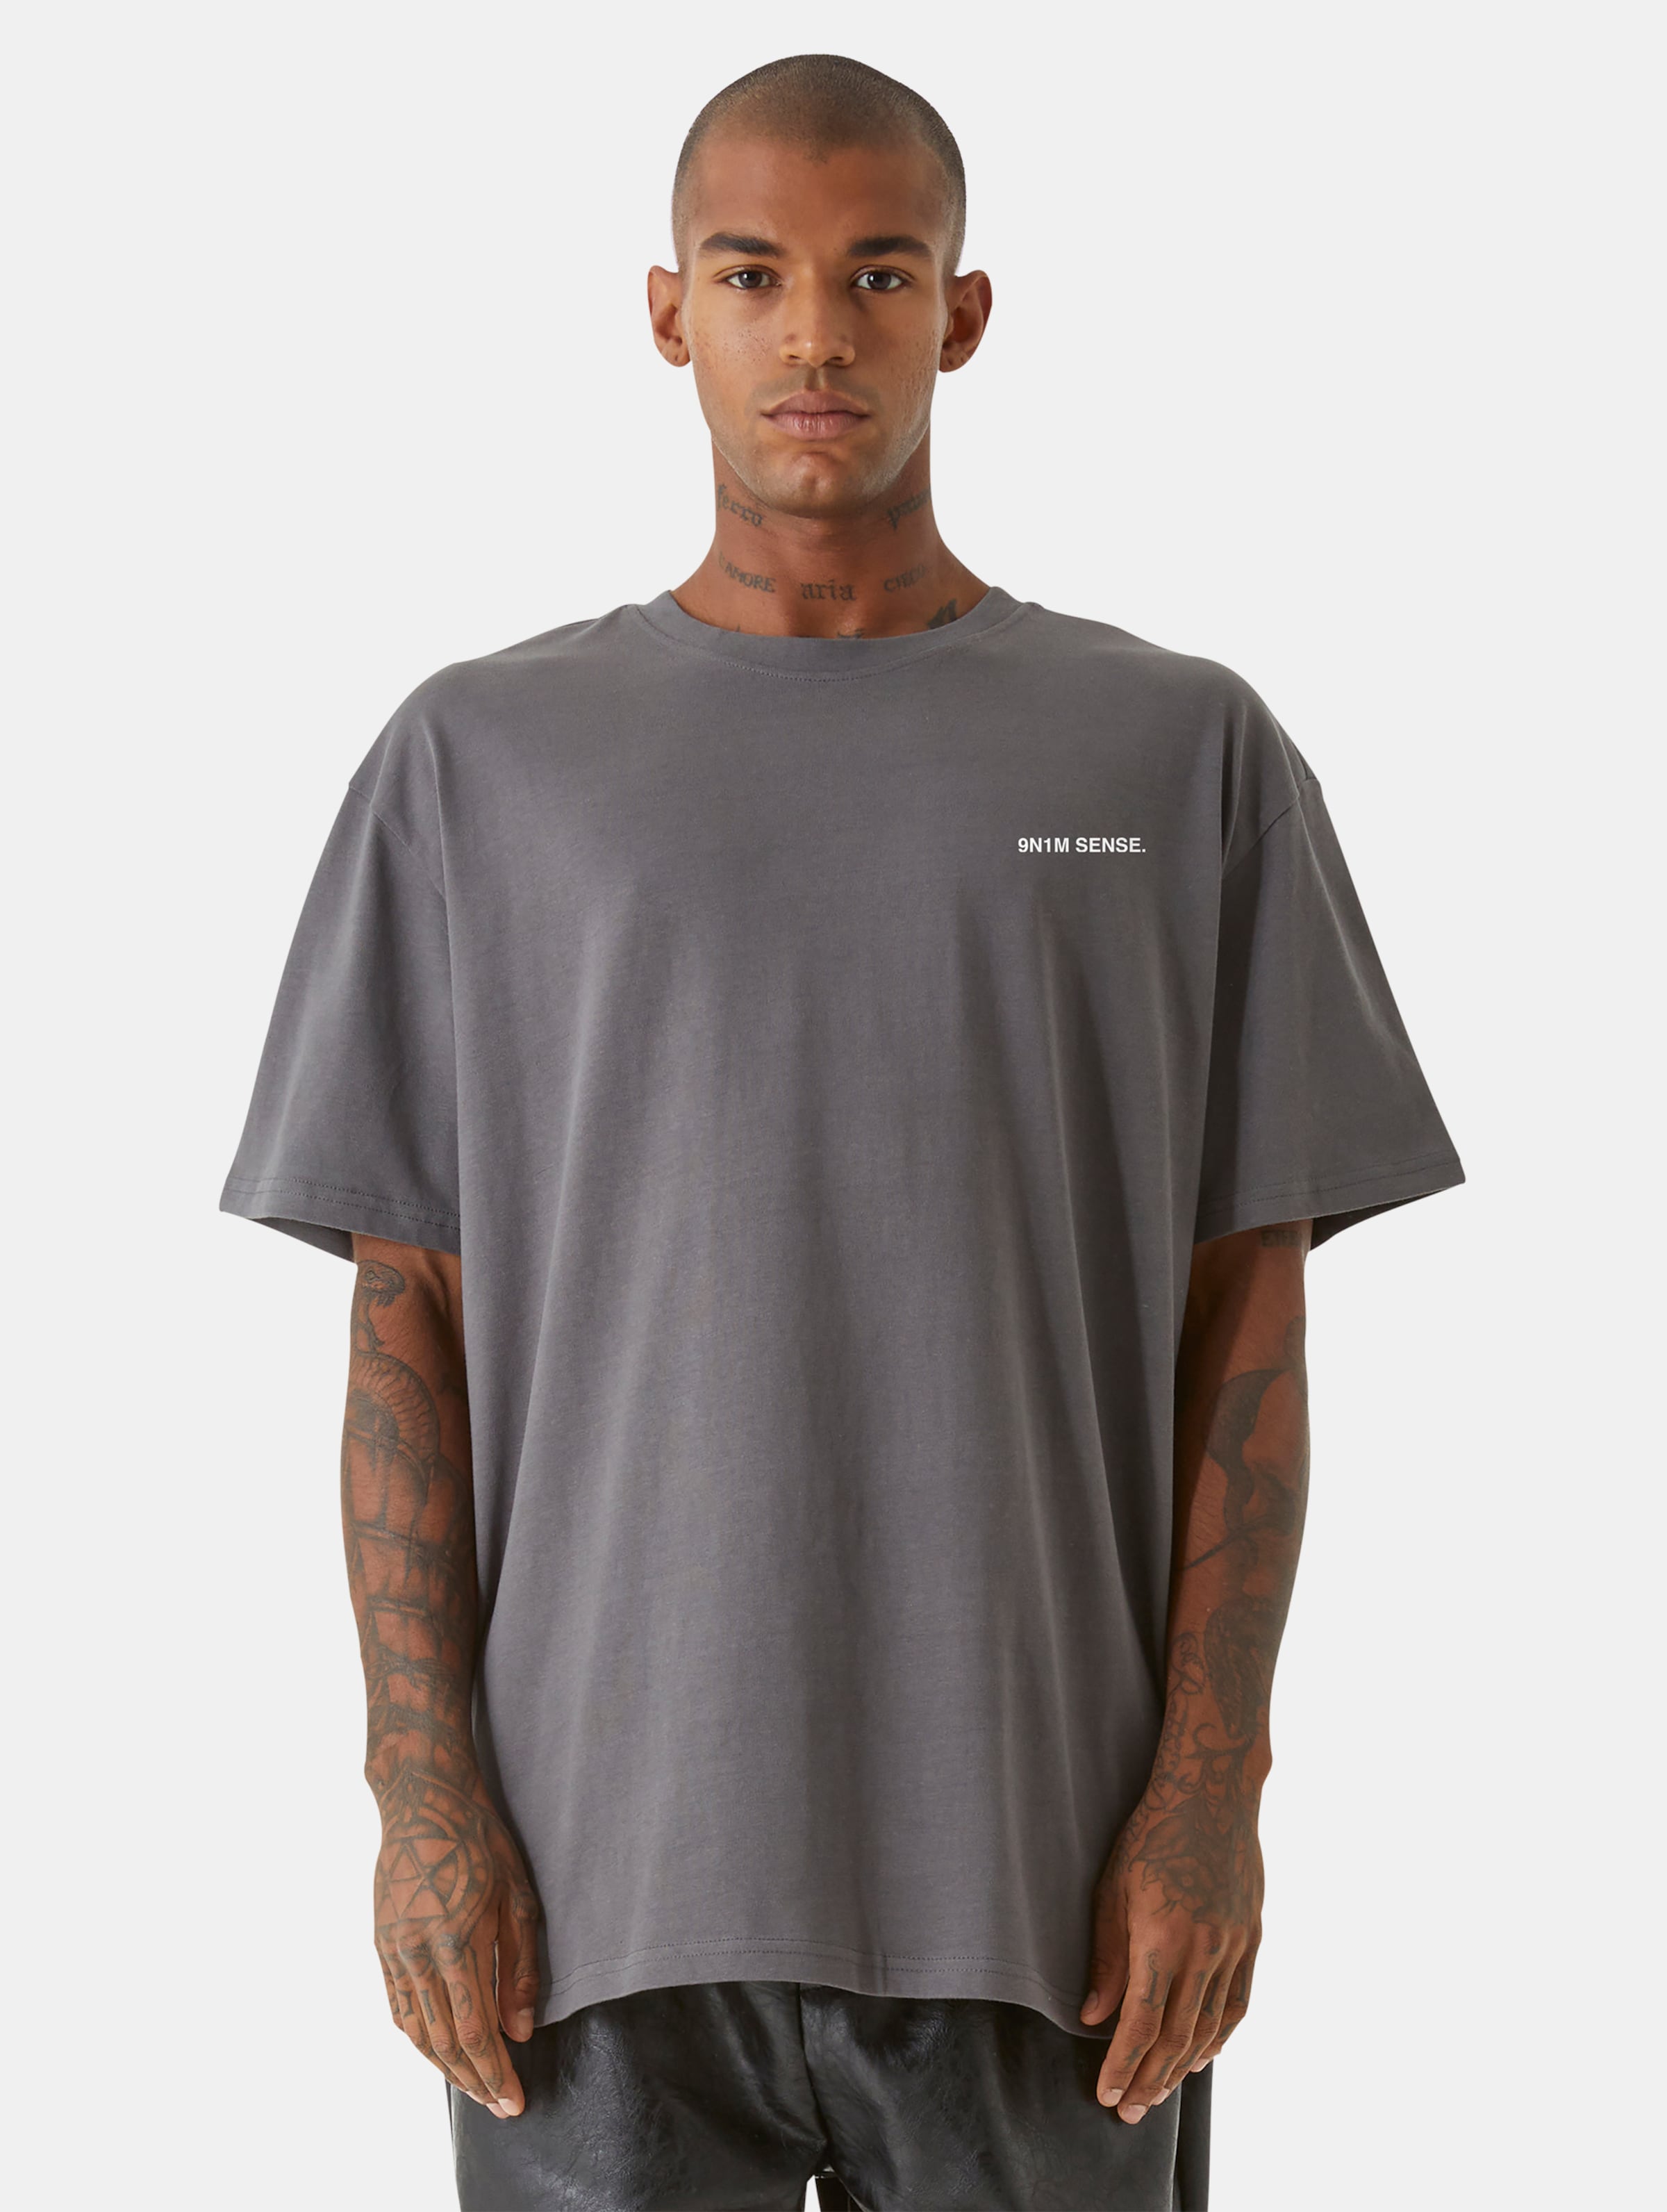 9N1M SENSE Change T-Shirts Männer,Unisex op kleur grijs, Maat 3XL